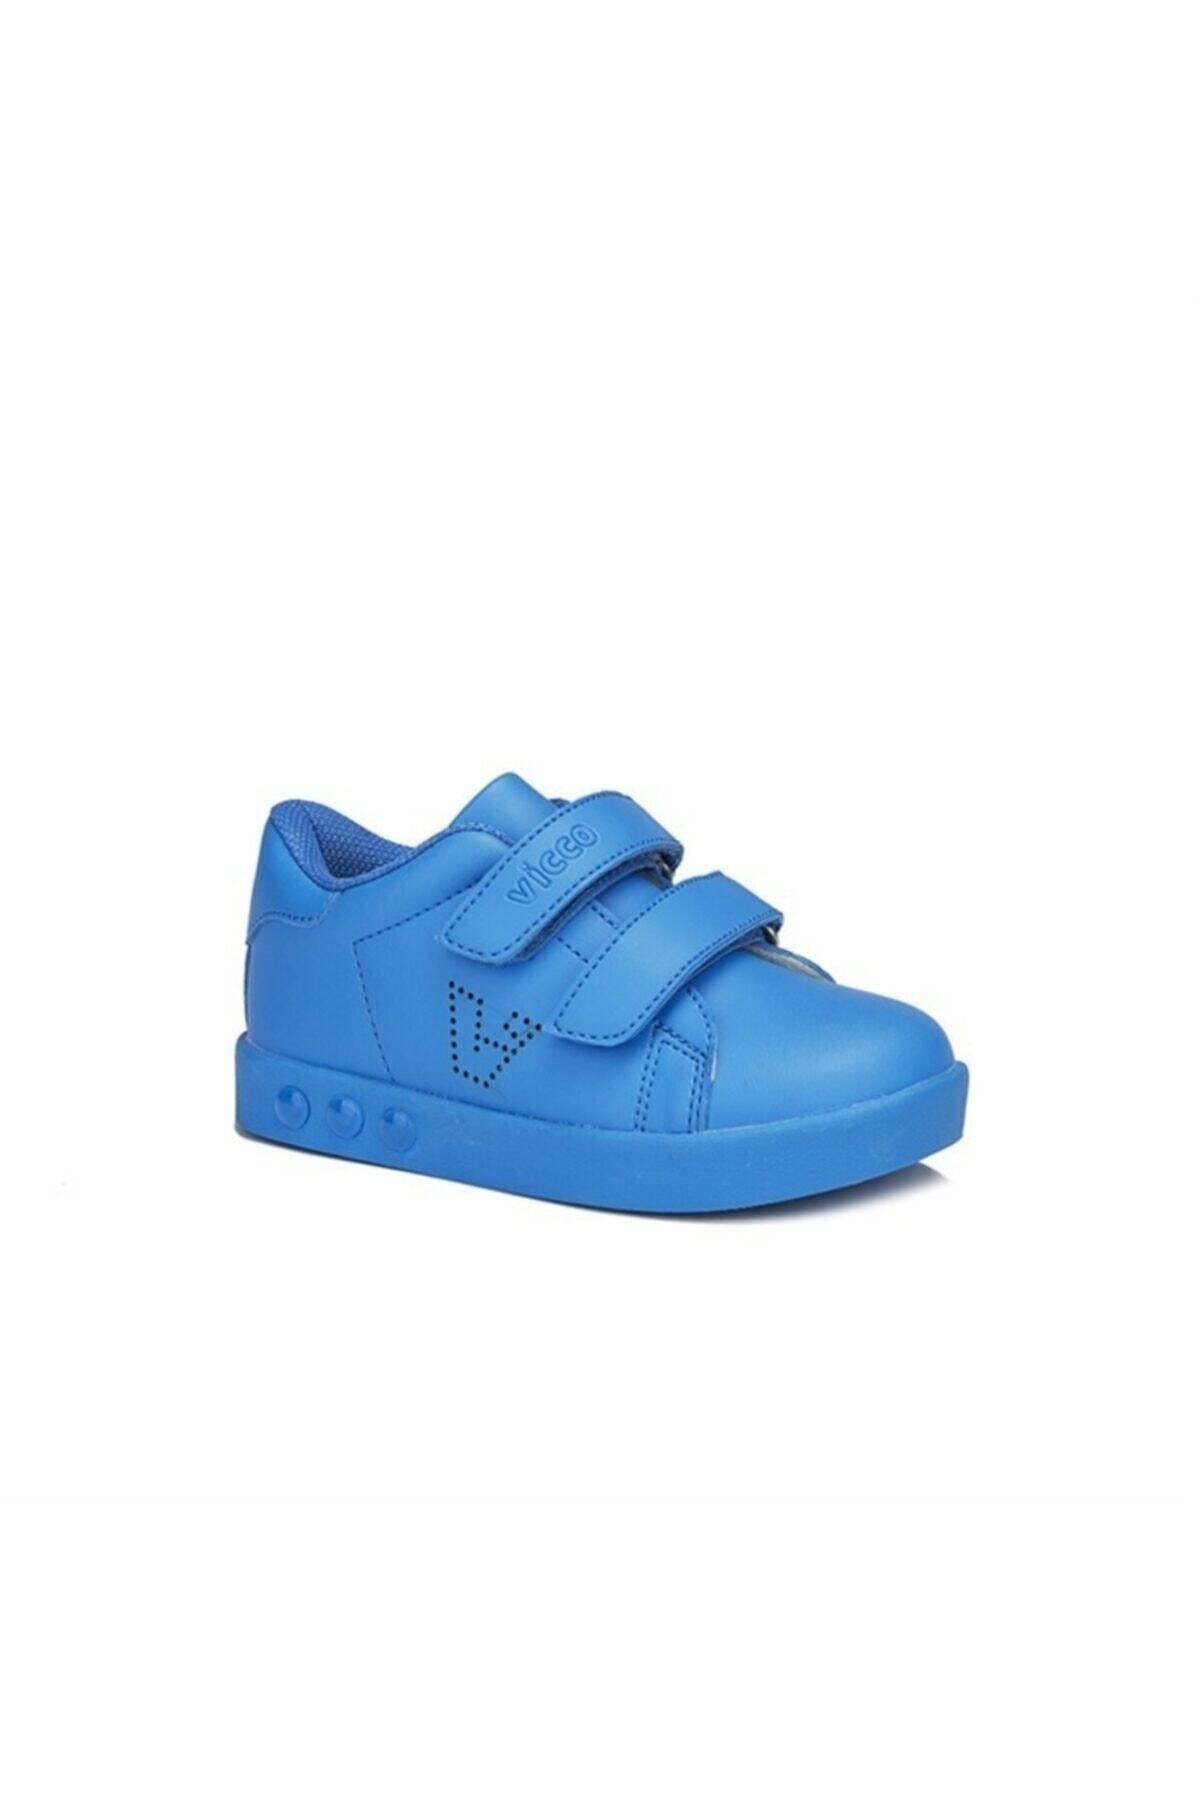 Vicco Erkek Bebek Mavi Işıklı Spor Ayakkabı 313.e19k.100